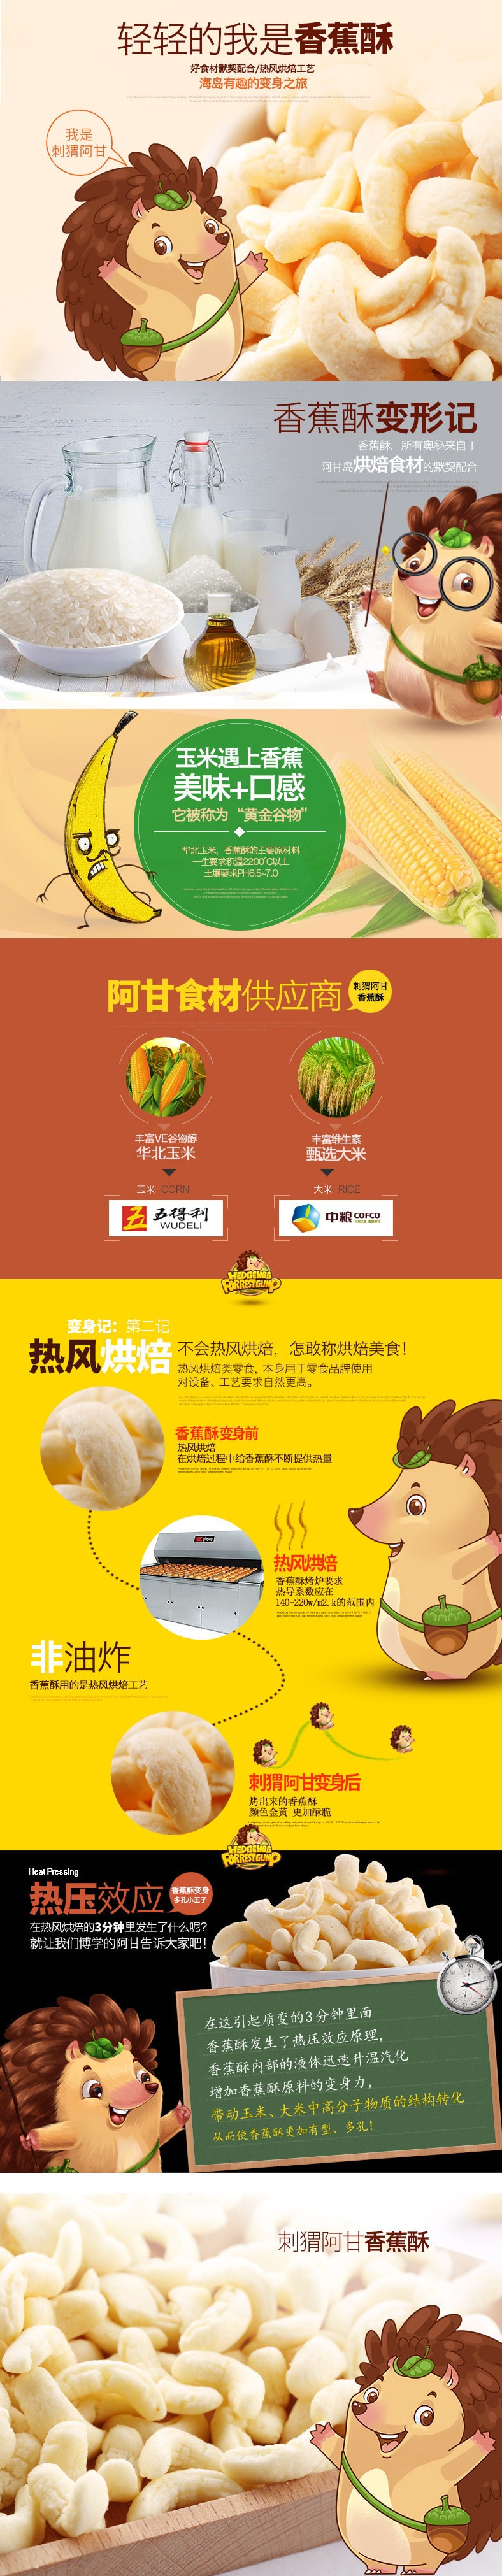 【中国直邮】刺猬阿甘 香蕉酥75gx3袋